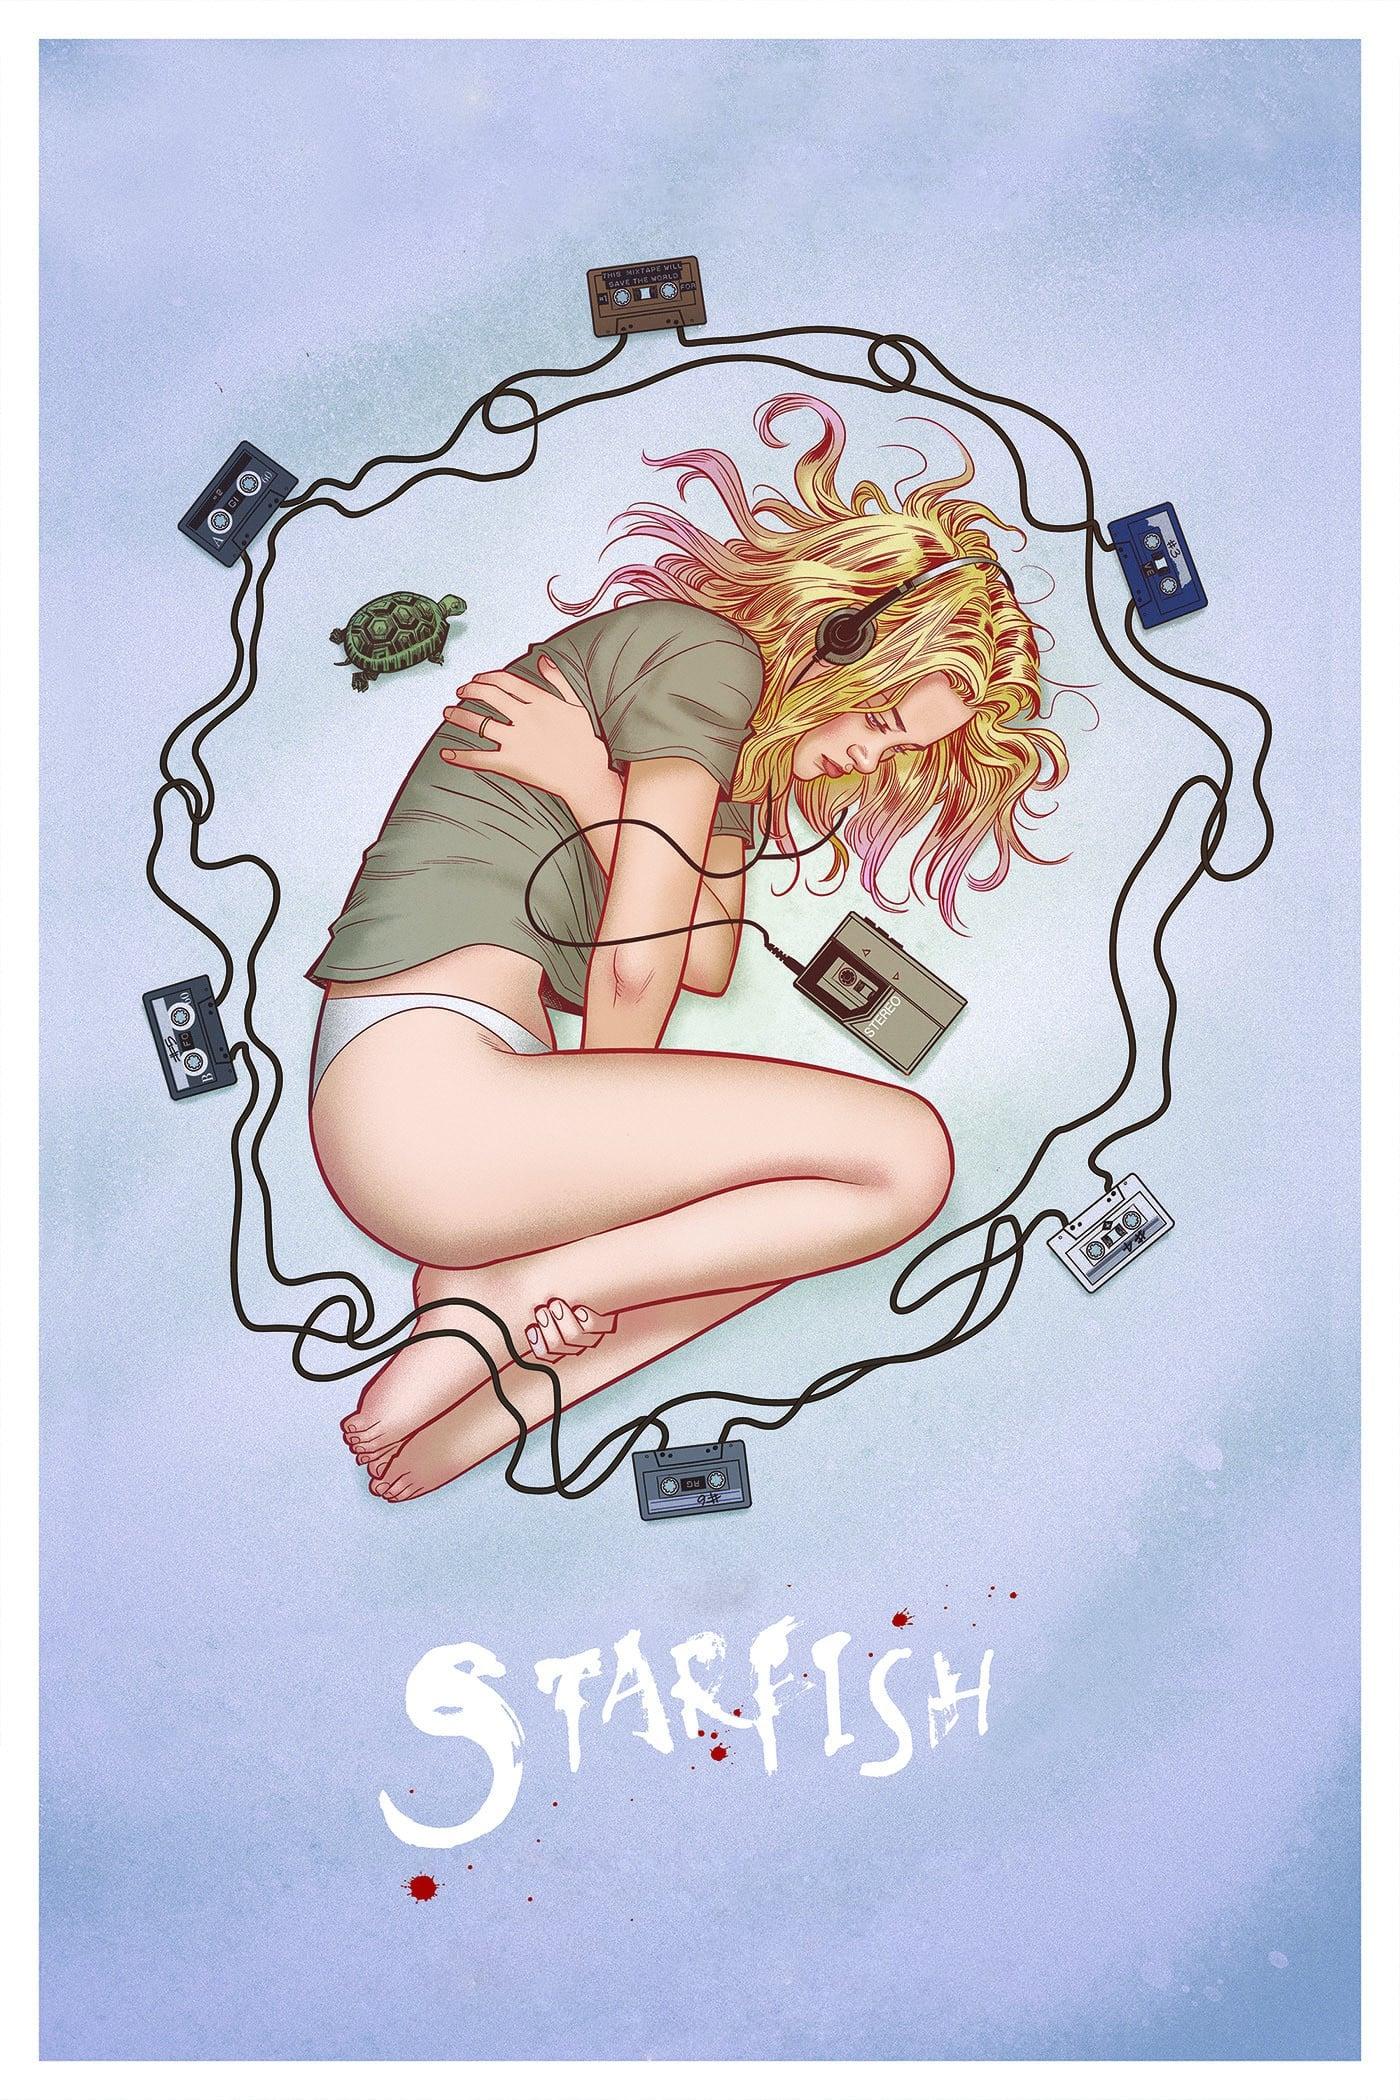 Starfish poster